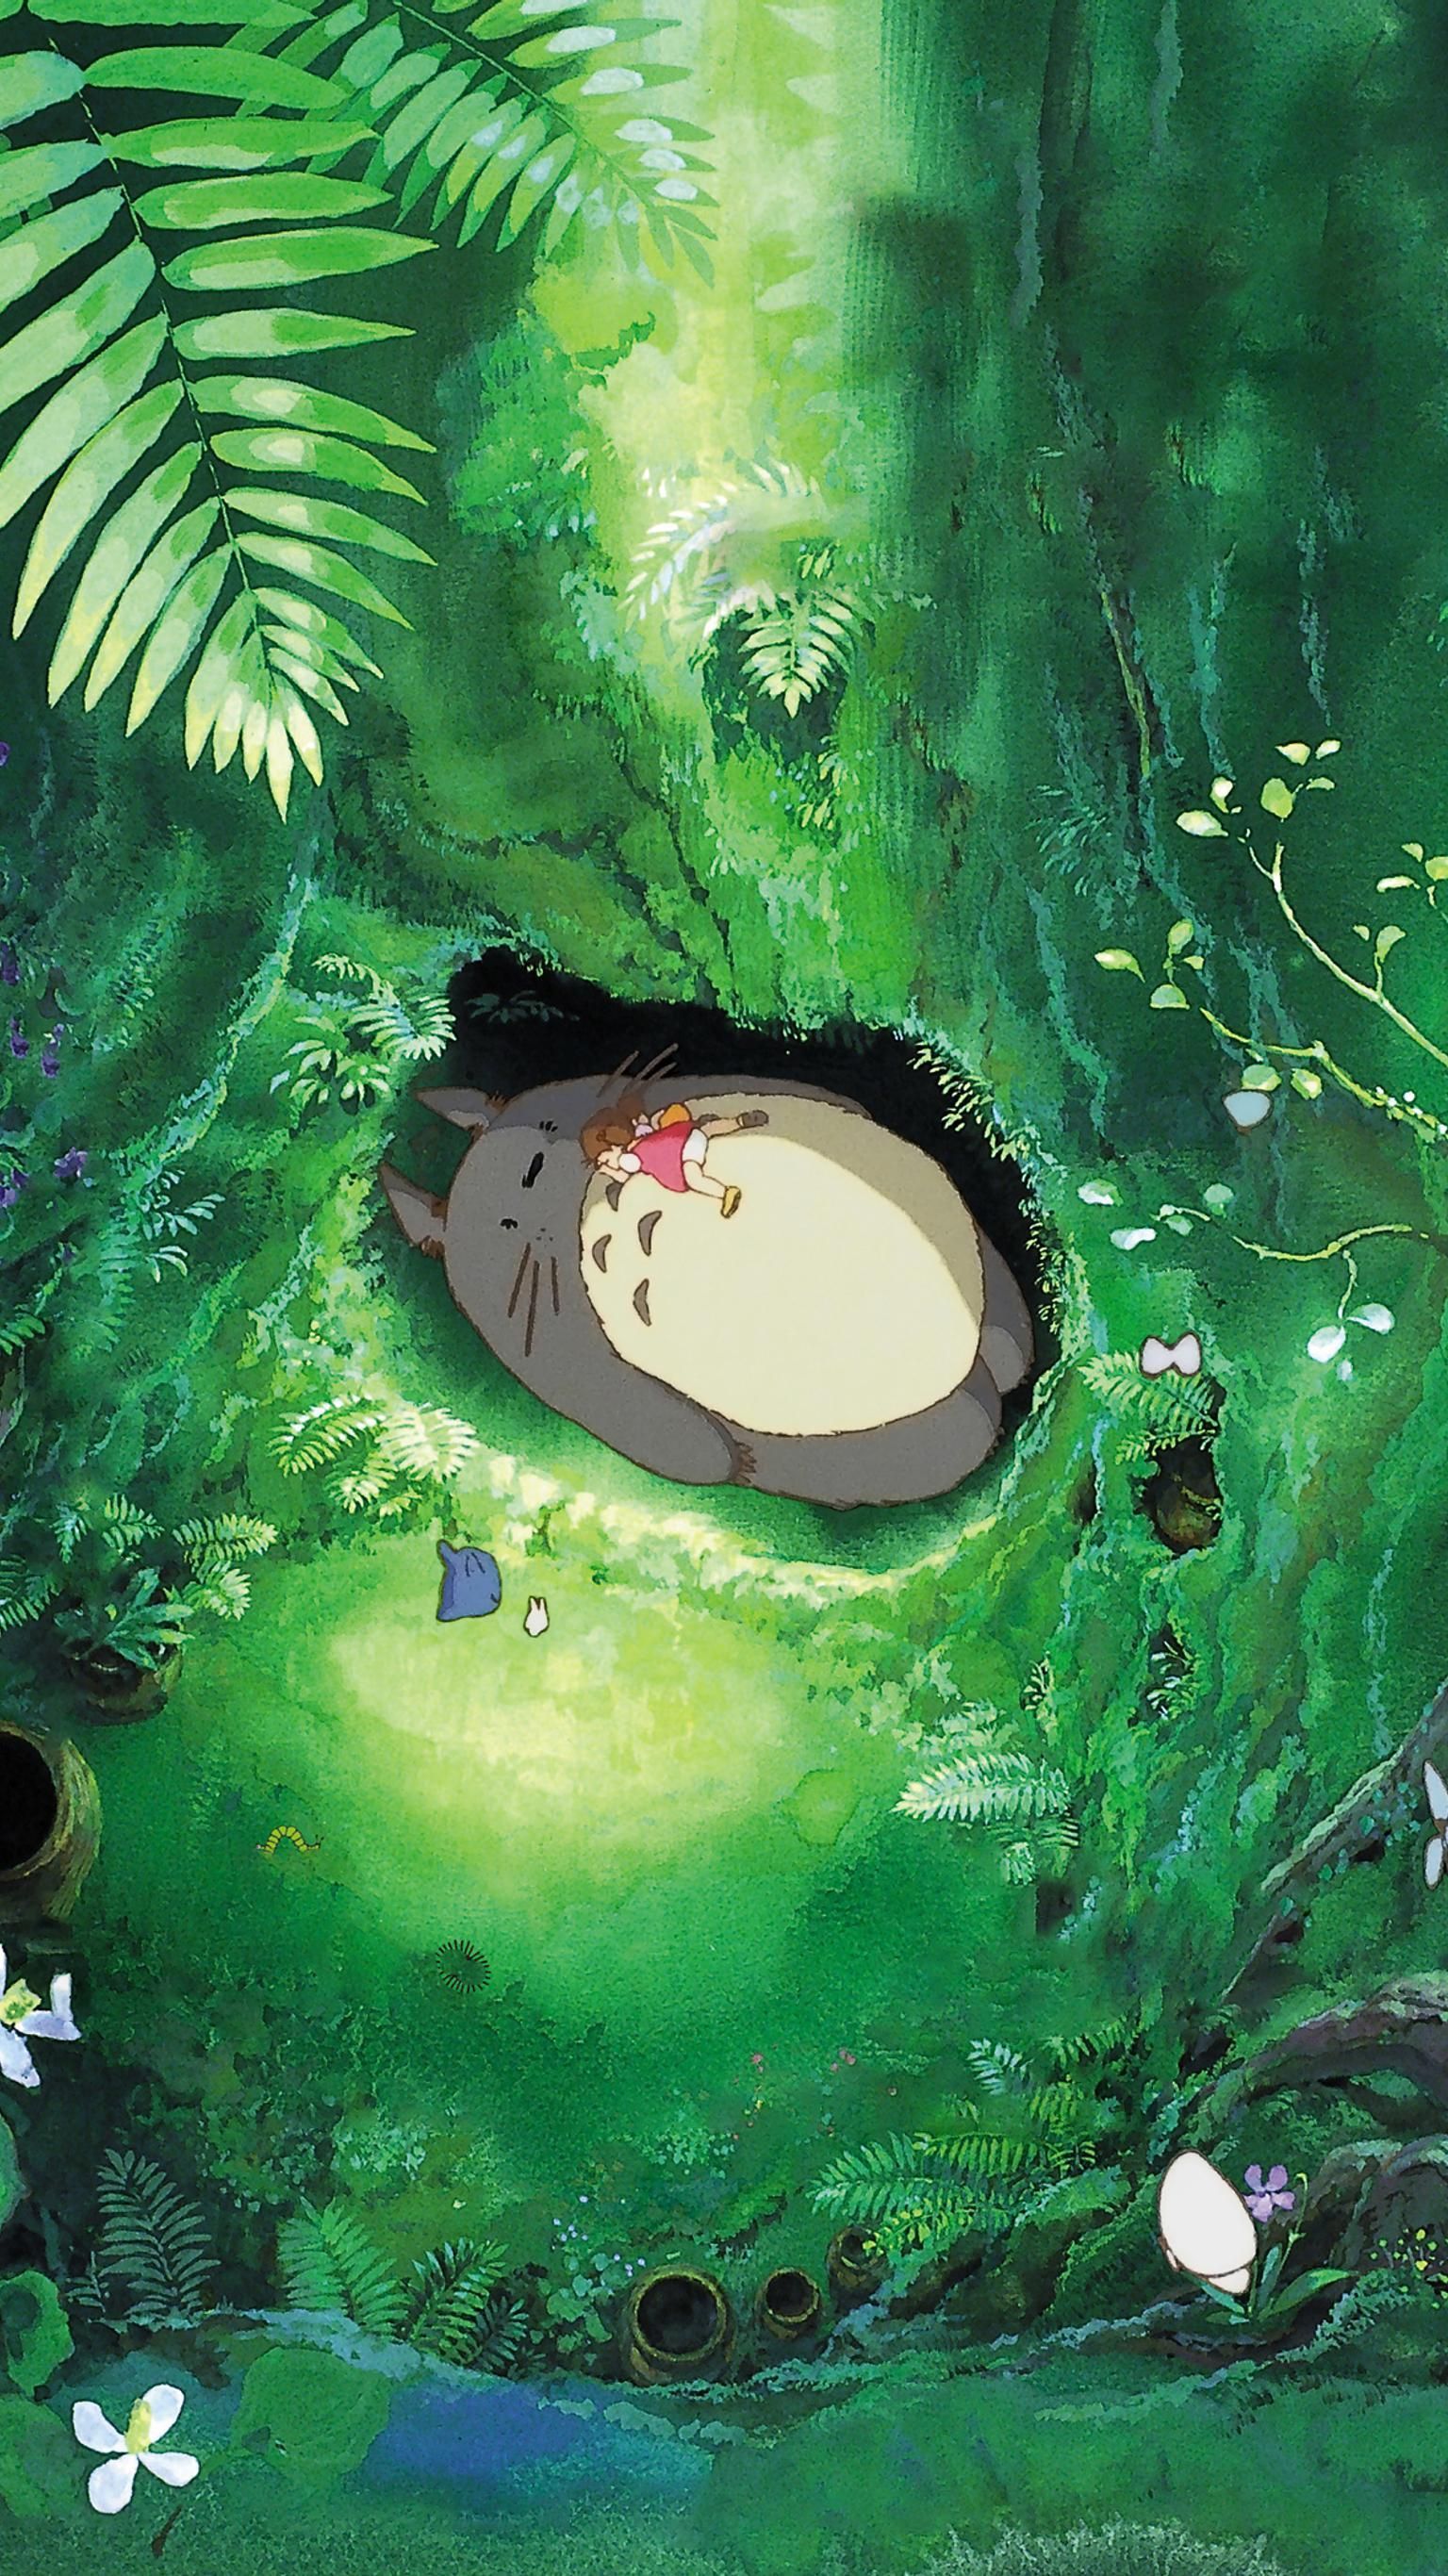 Kaonashi Ghibli Museum Studio Ghibli Hình nền máy tính My Neighbor Totoro -  bảo tàng mèo png png tải về - Miễn phí trong suốt Phim Hoạt Hình png Tải về.